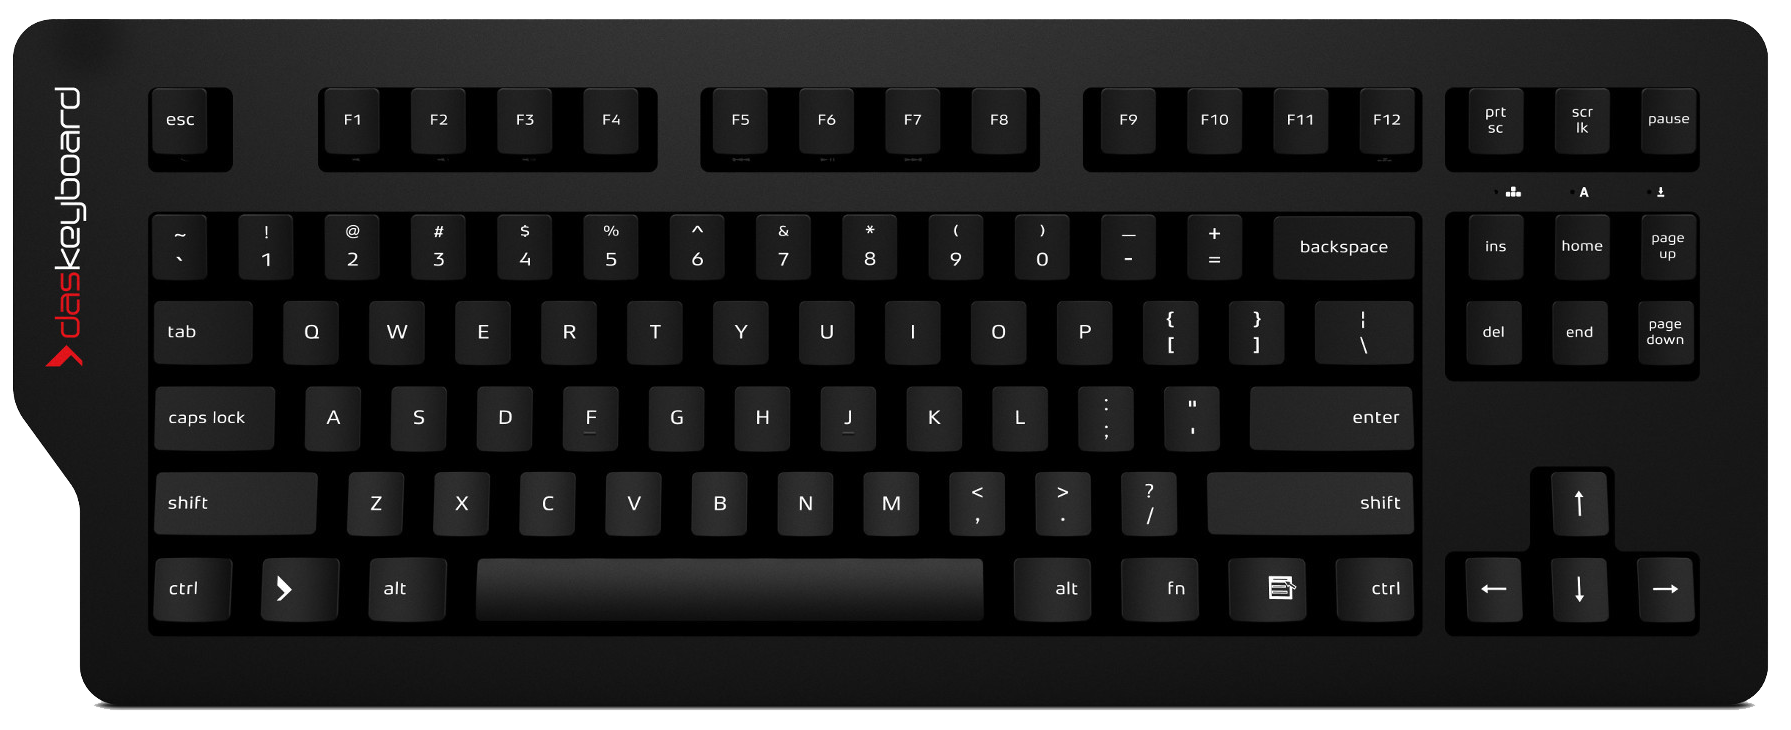 Keyboard Image PNG Image